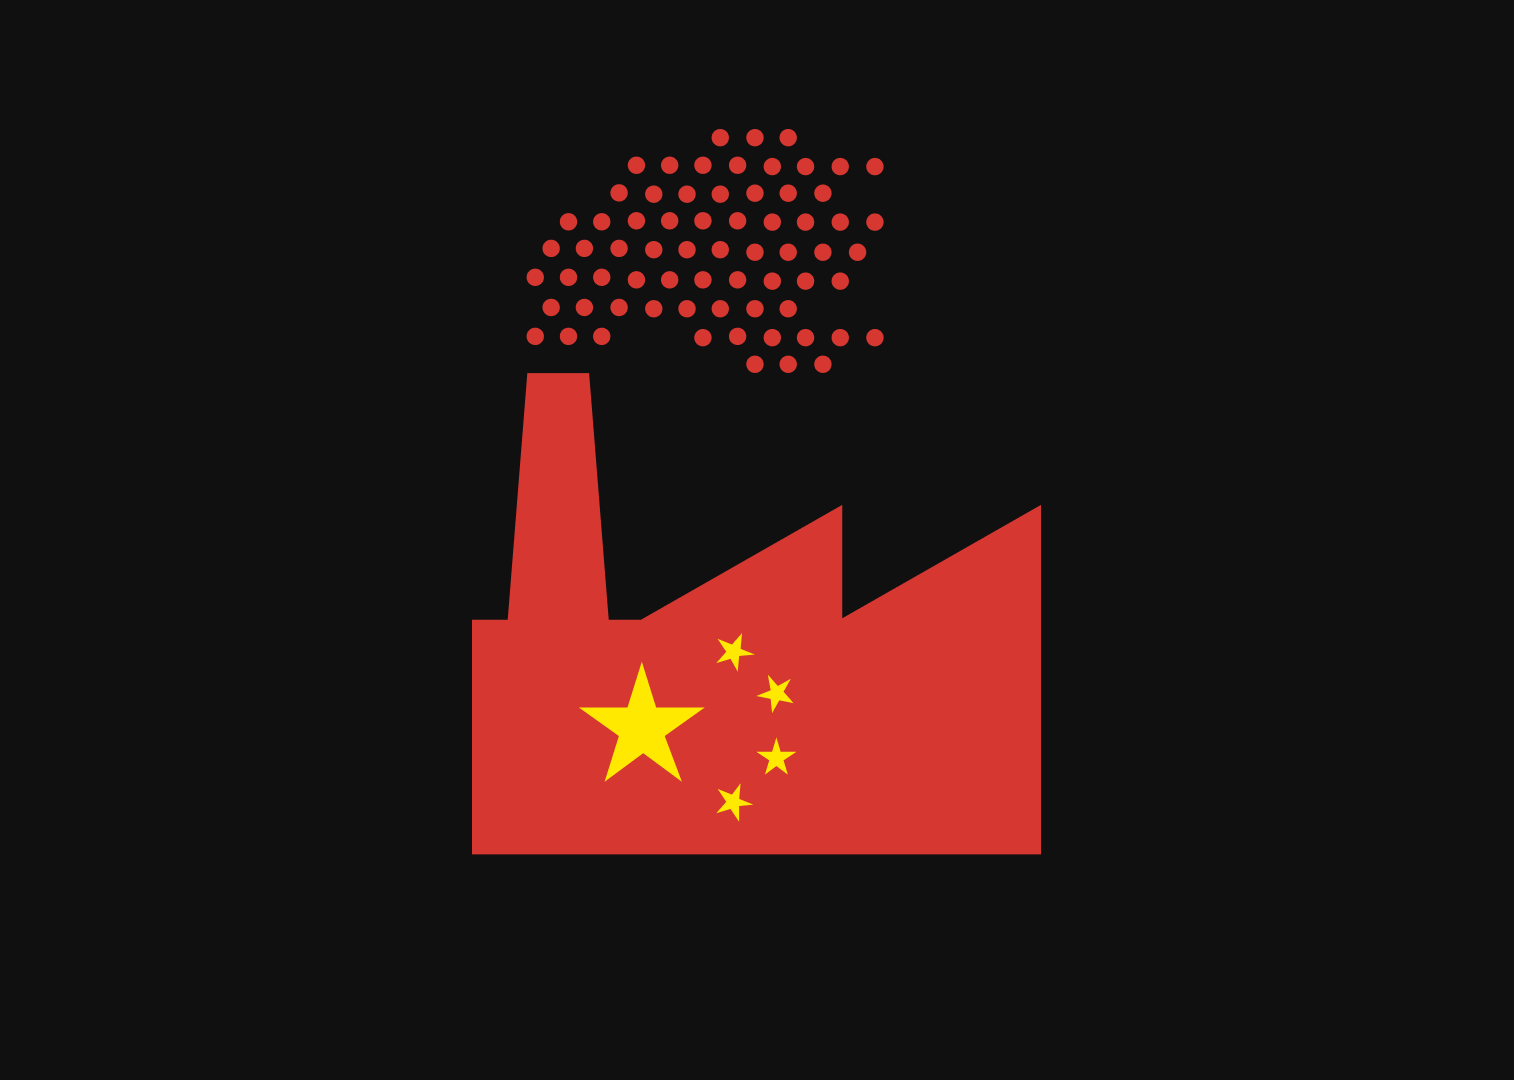 Il focus della Cina sulle basse emissioni potrebbe influenzare i metalli industriali